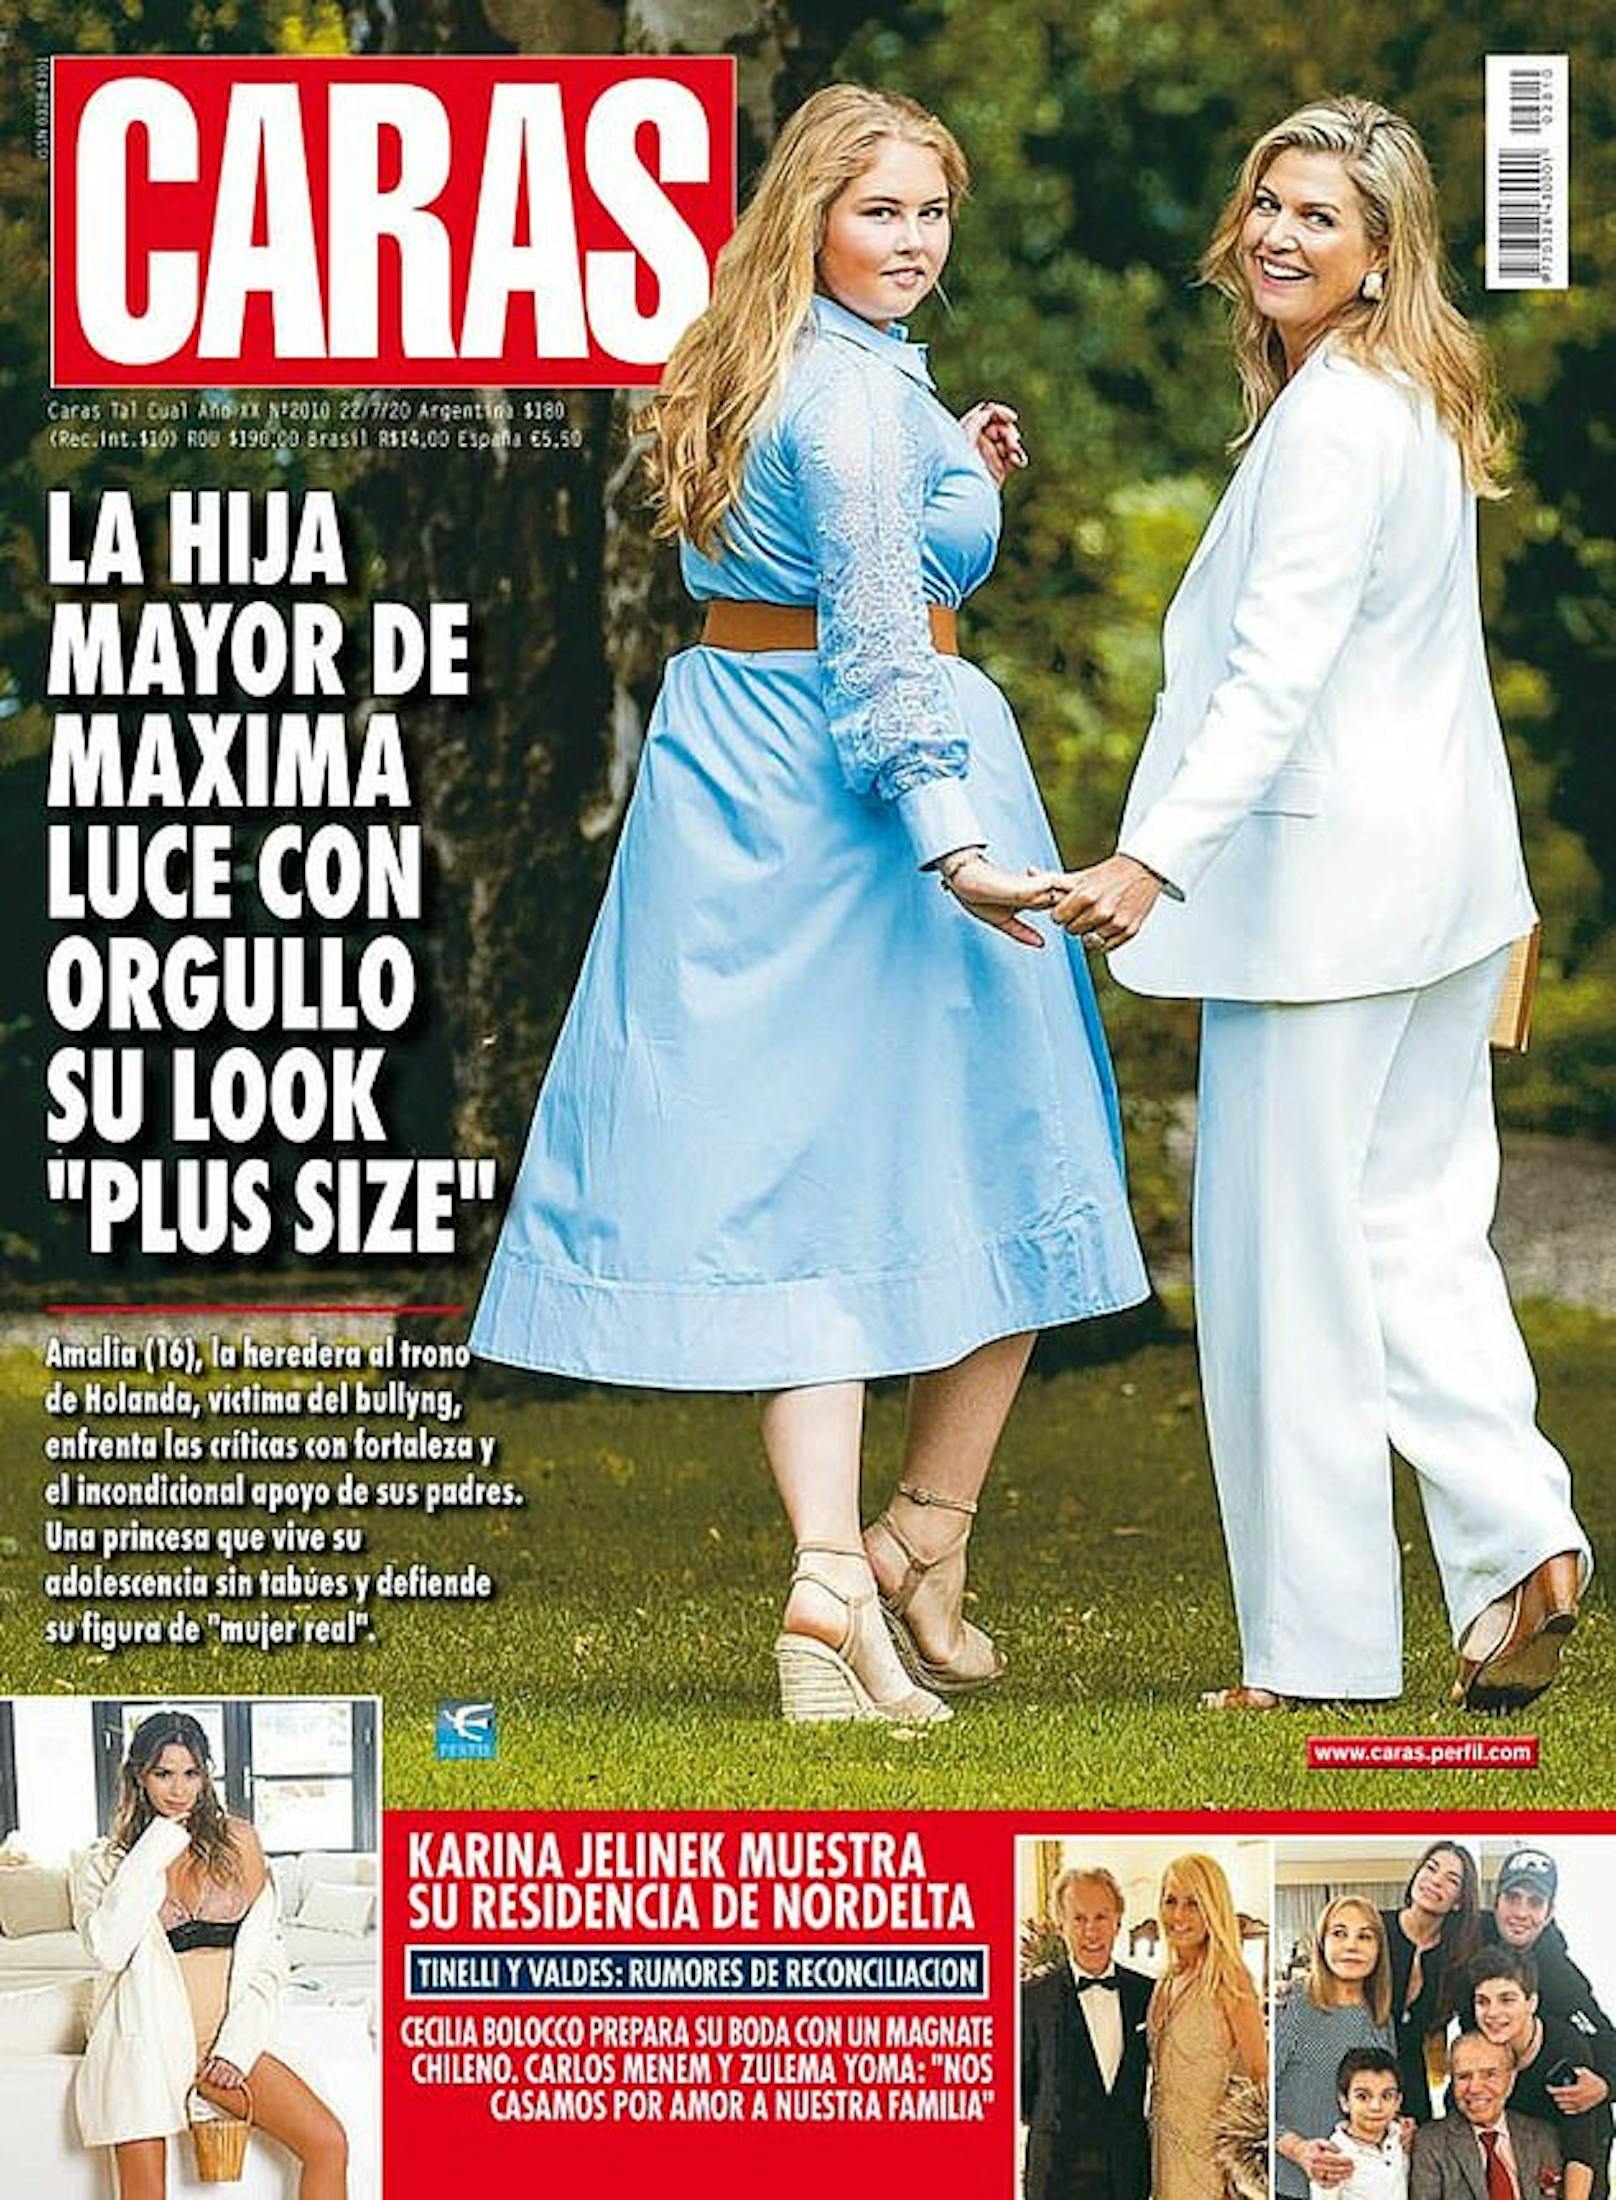 Ein Magazin titelte ein Foto von Amalia und ihrer Mutter Königin Maxima mit "Die Prinzessin zeigt stolz ihren Plus-Size-Look" – das sorgte für heftige Kritik.